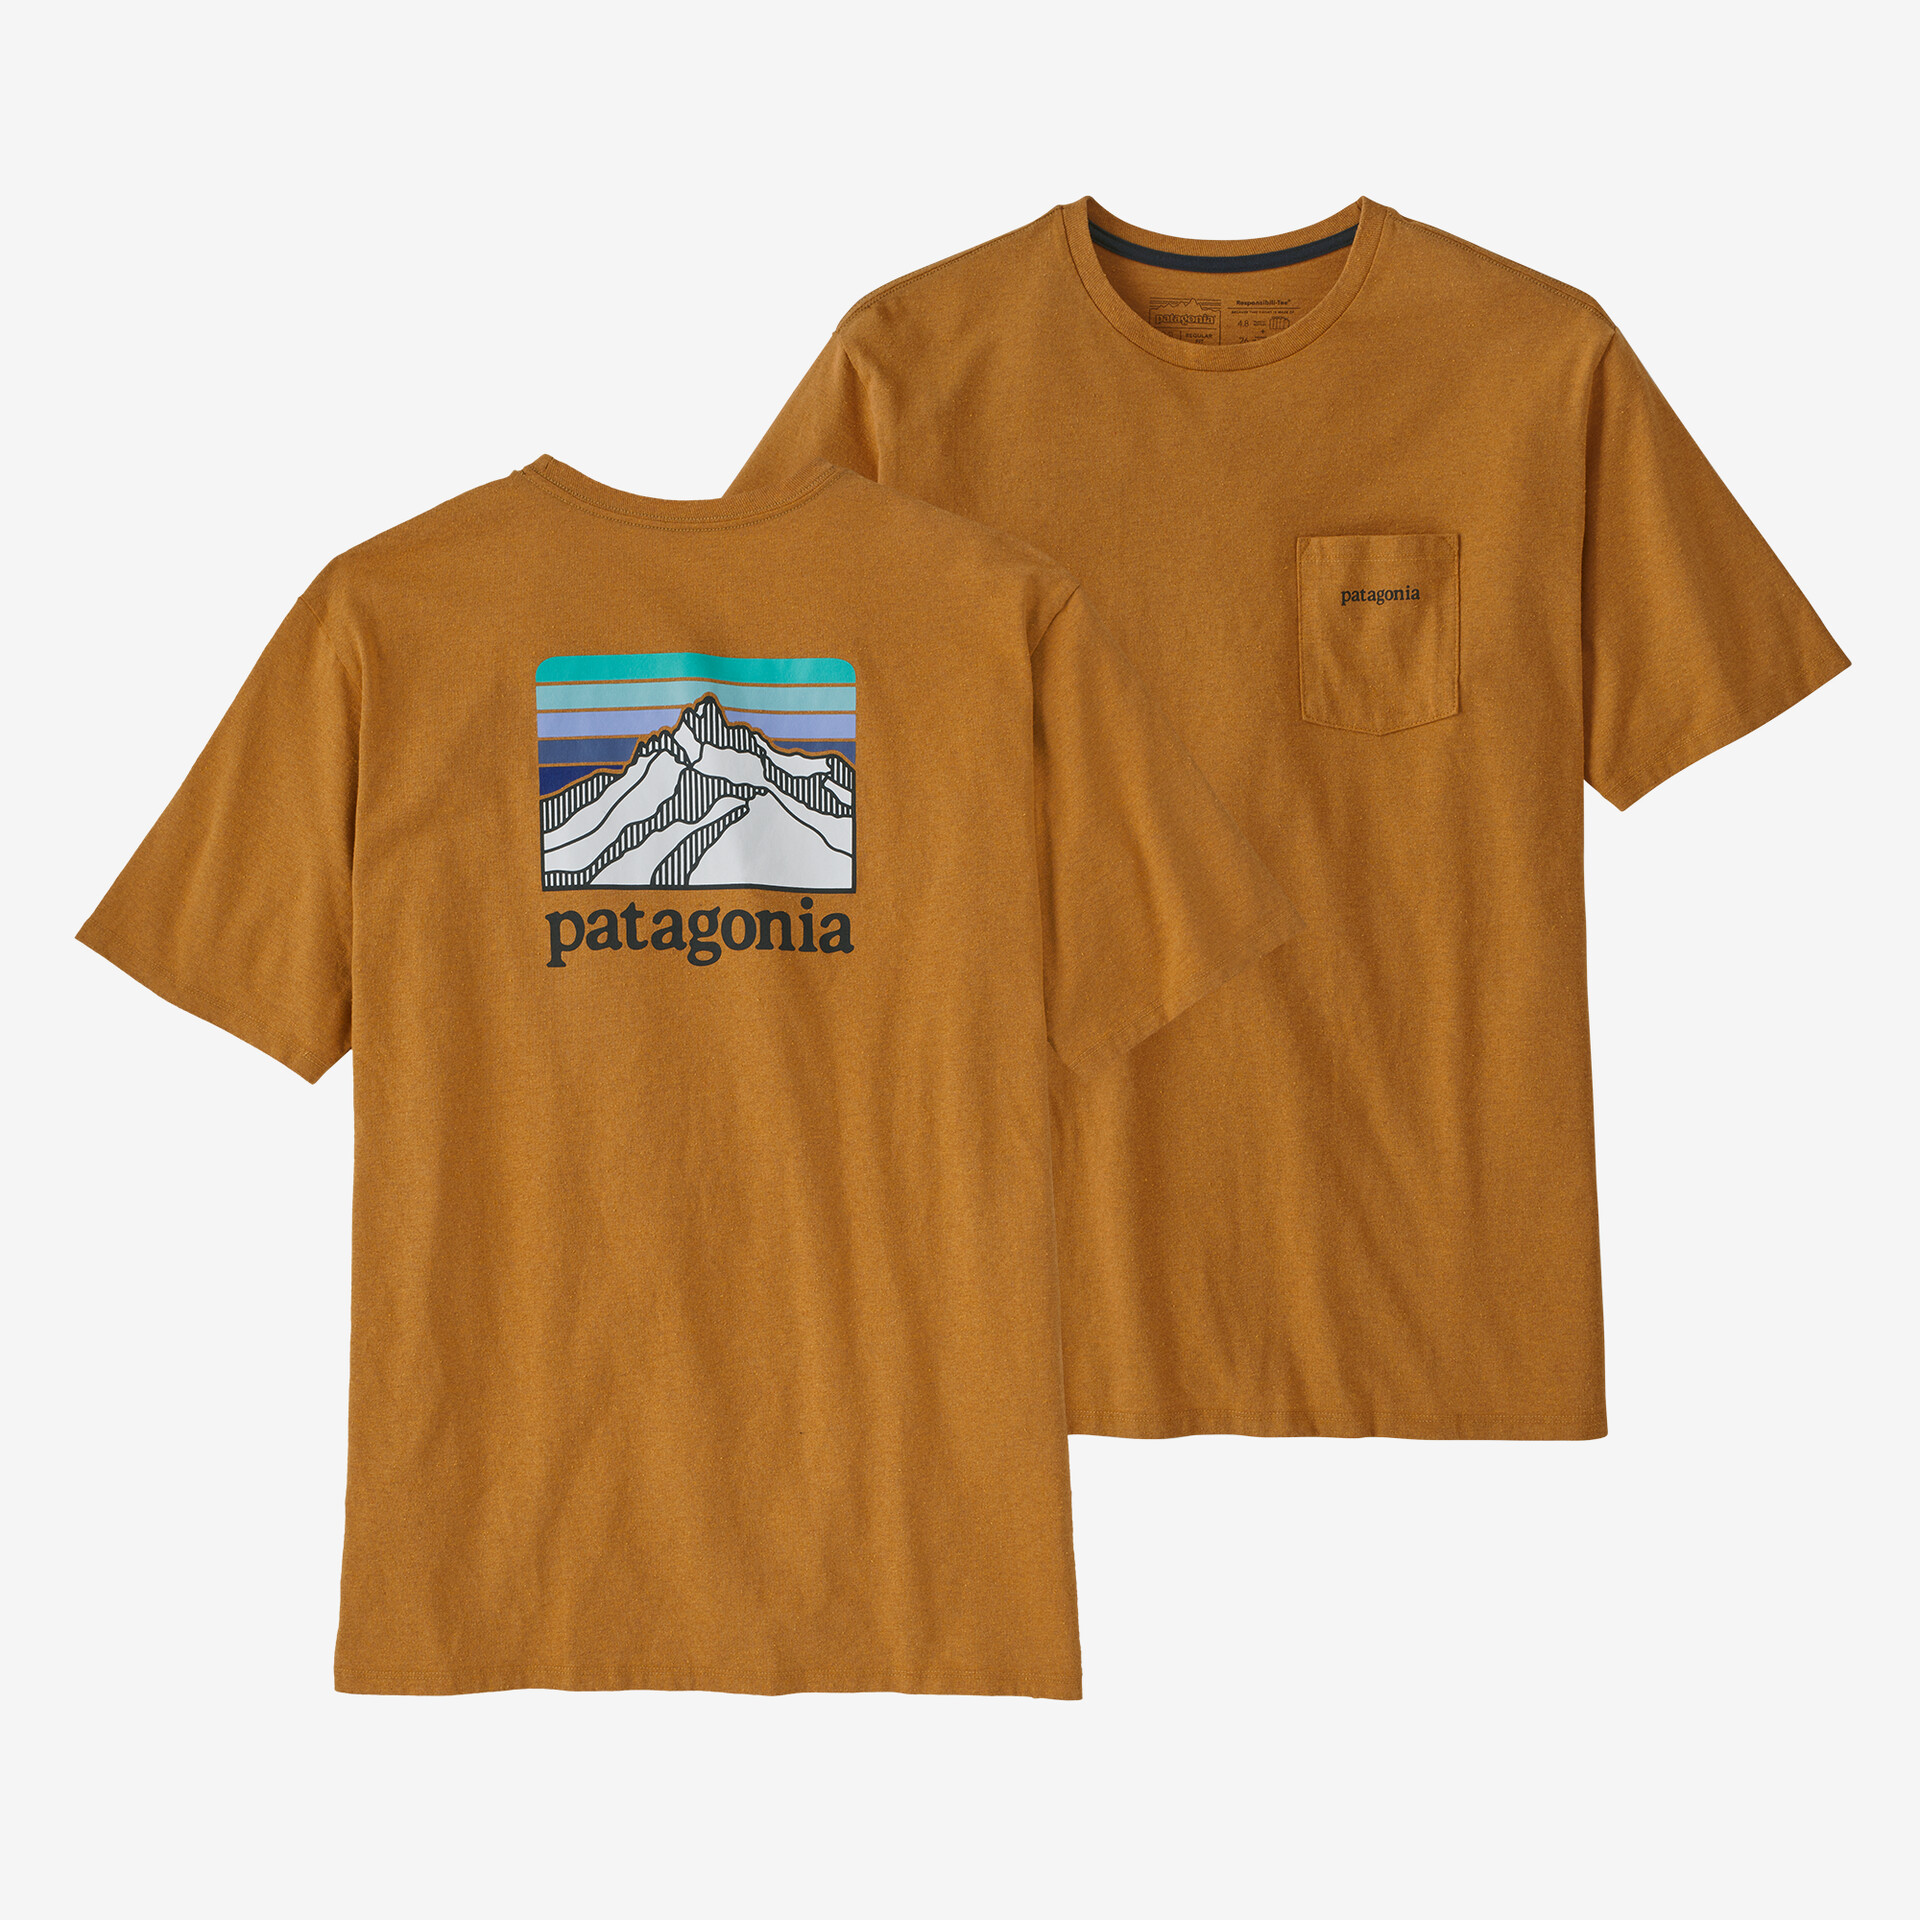 Мужская ответственная футболка с логотипом и карманом Patagonia, цвет Dried Mango мужская ответственная футболка с логотипом и карманом patagonia черный